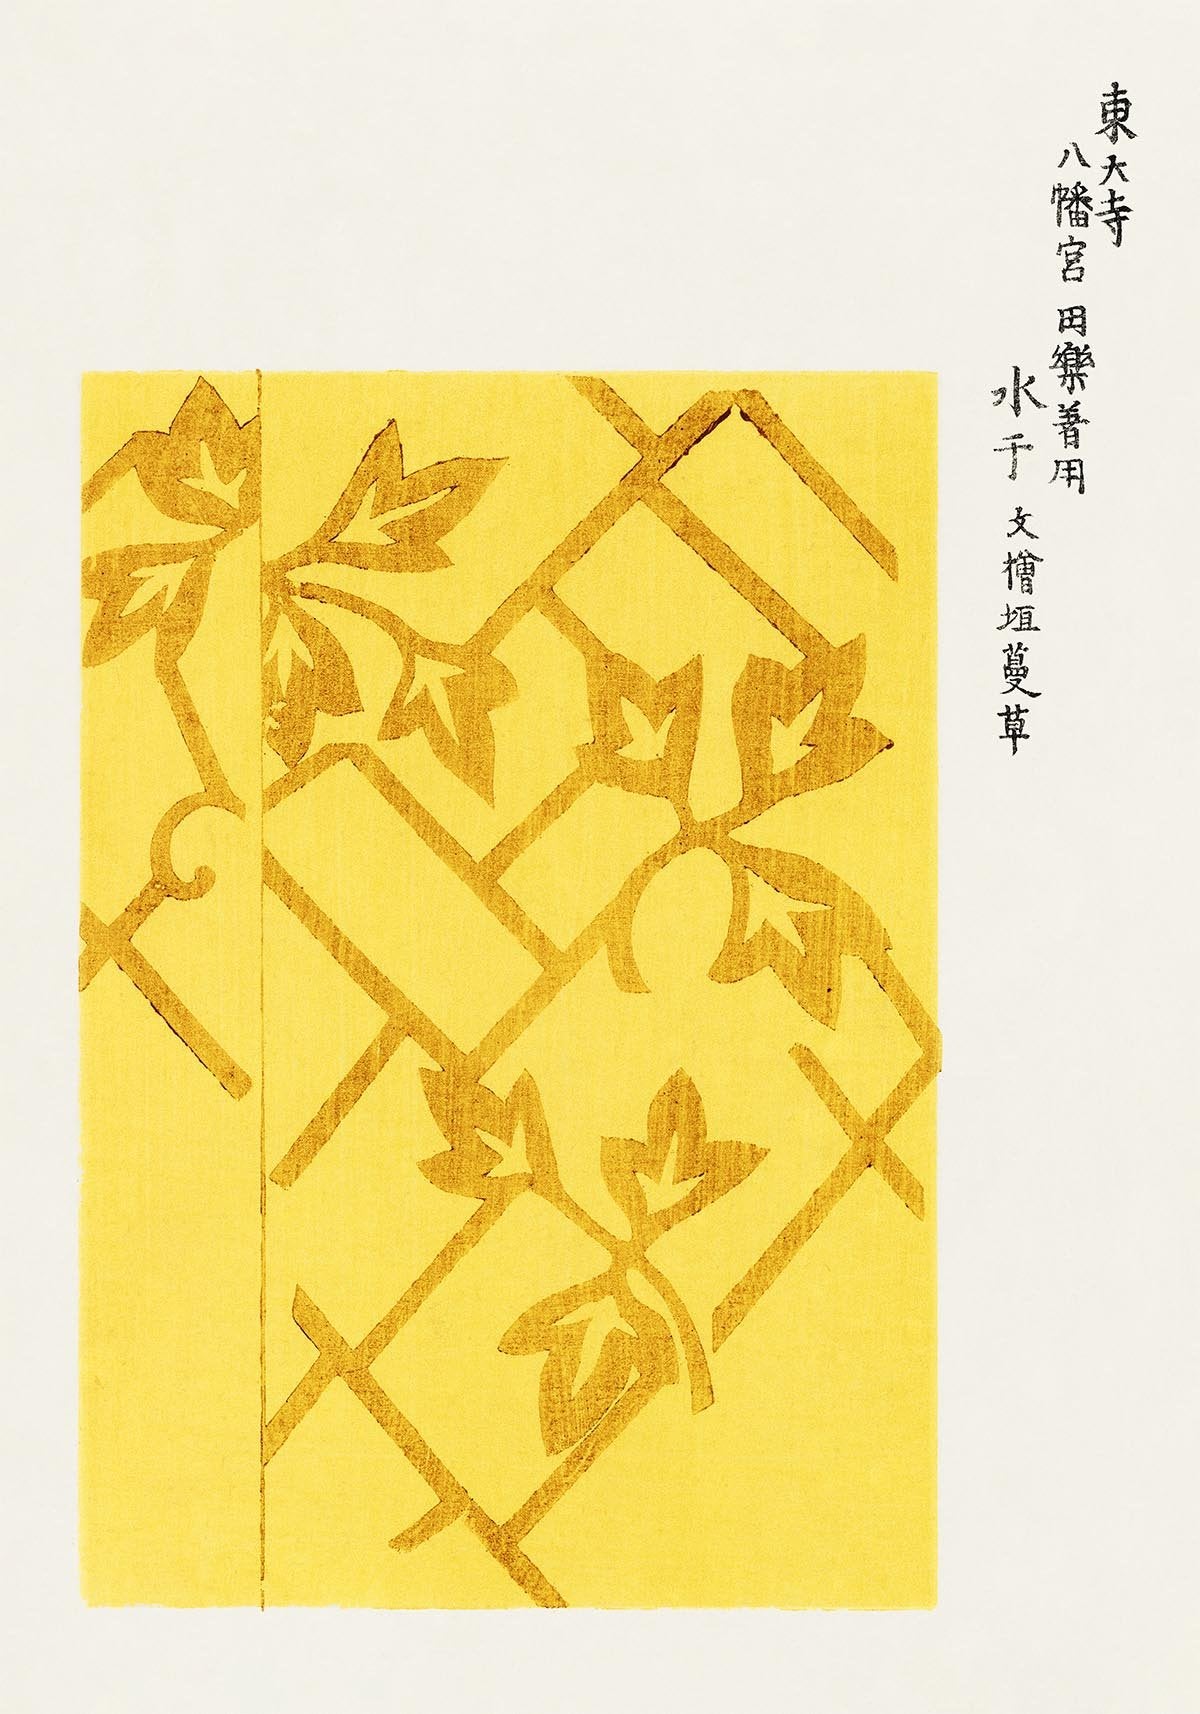 Vintage Japanese Woodblock Print Nr 8